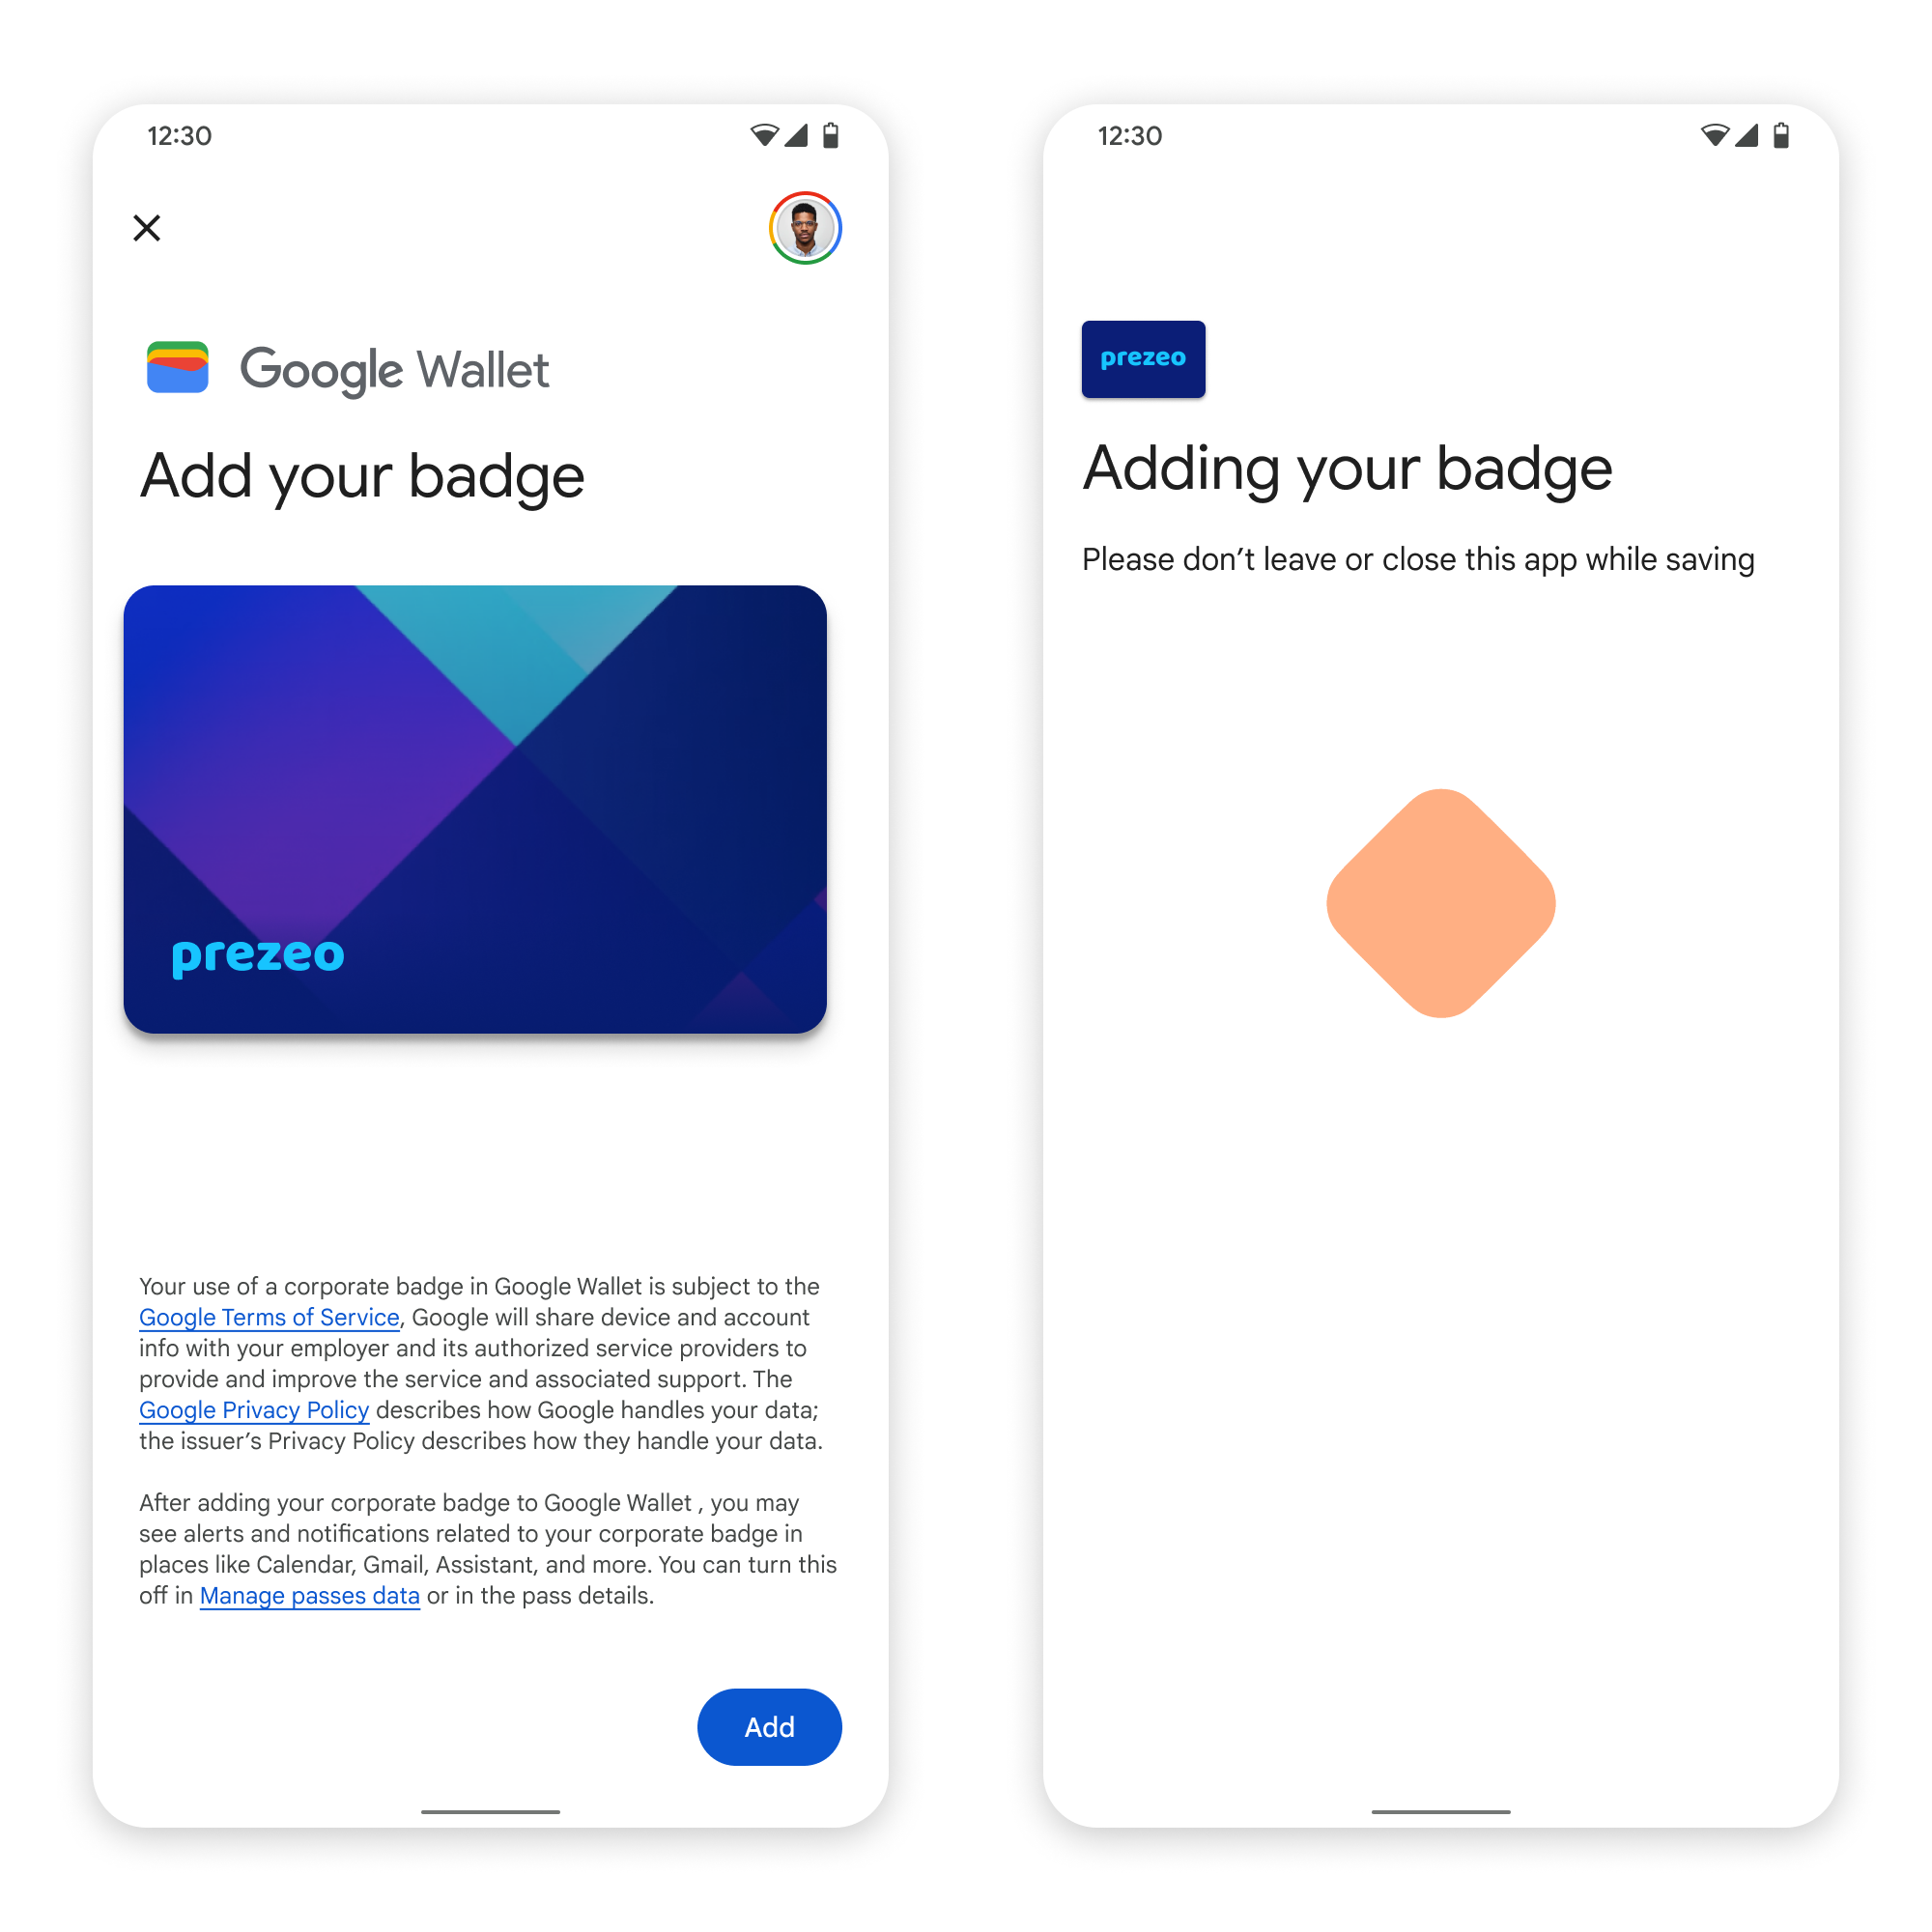 Auf dem ersten Bildschirm stellt die App eine Verbindung zu Google Wallet her. In
       akzeptiert der Nutzer die Nutzungsbedingungen und fährt fort.